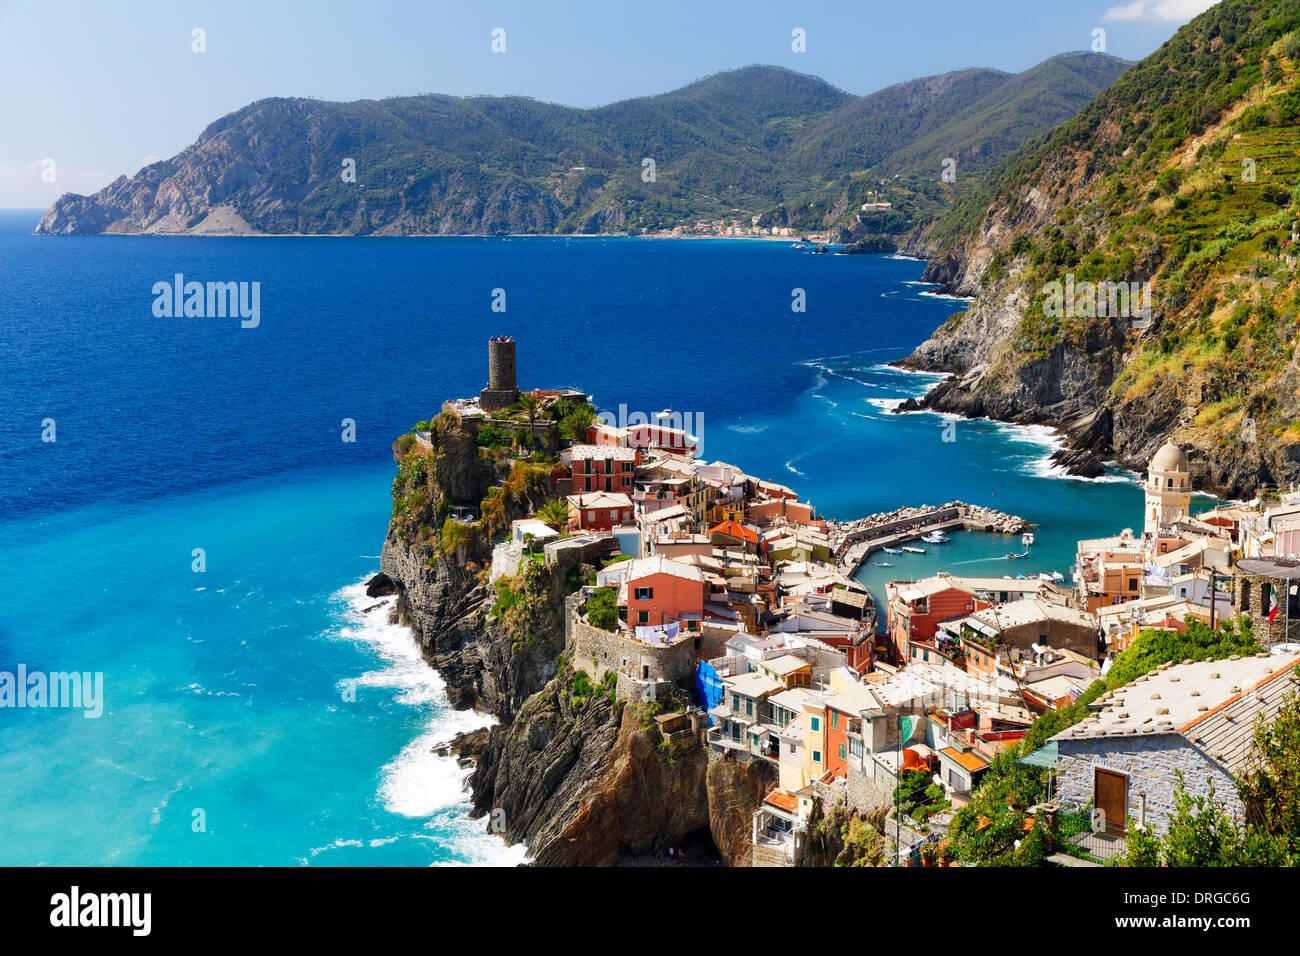 Portrait d'une petite ville côtière sur une falaise, Vernazza, Cinque Terre, ligurie, italie Banque D'Images